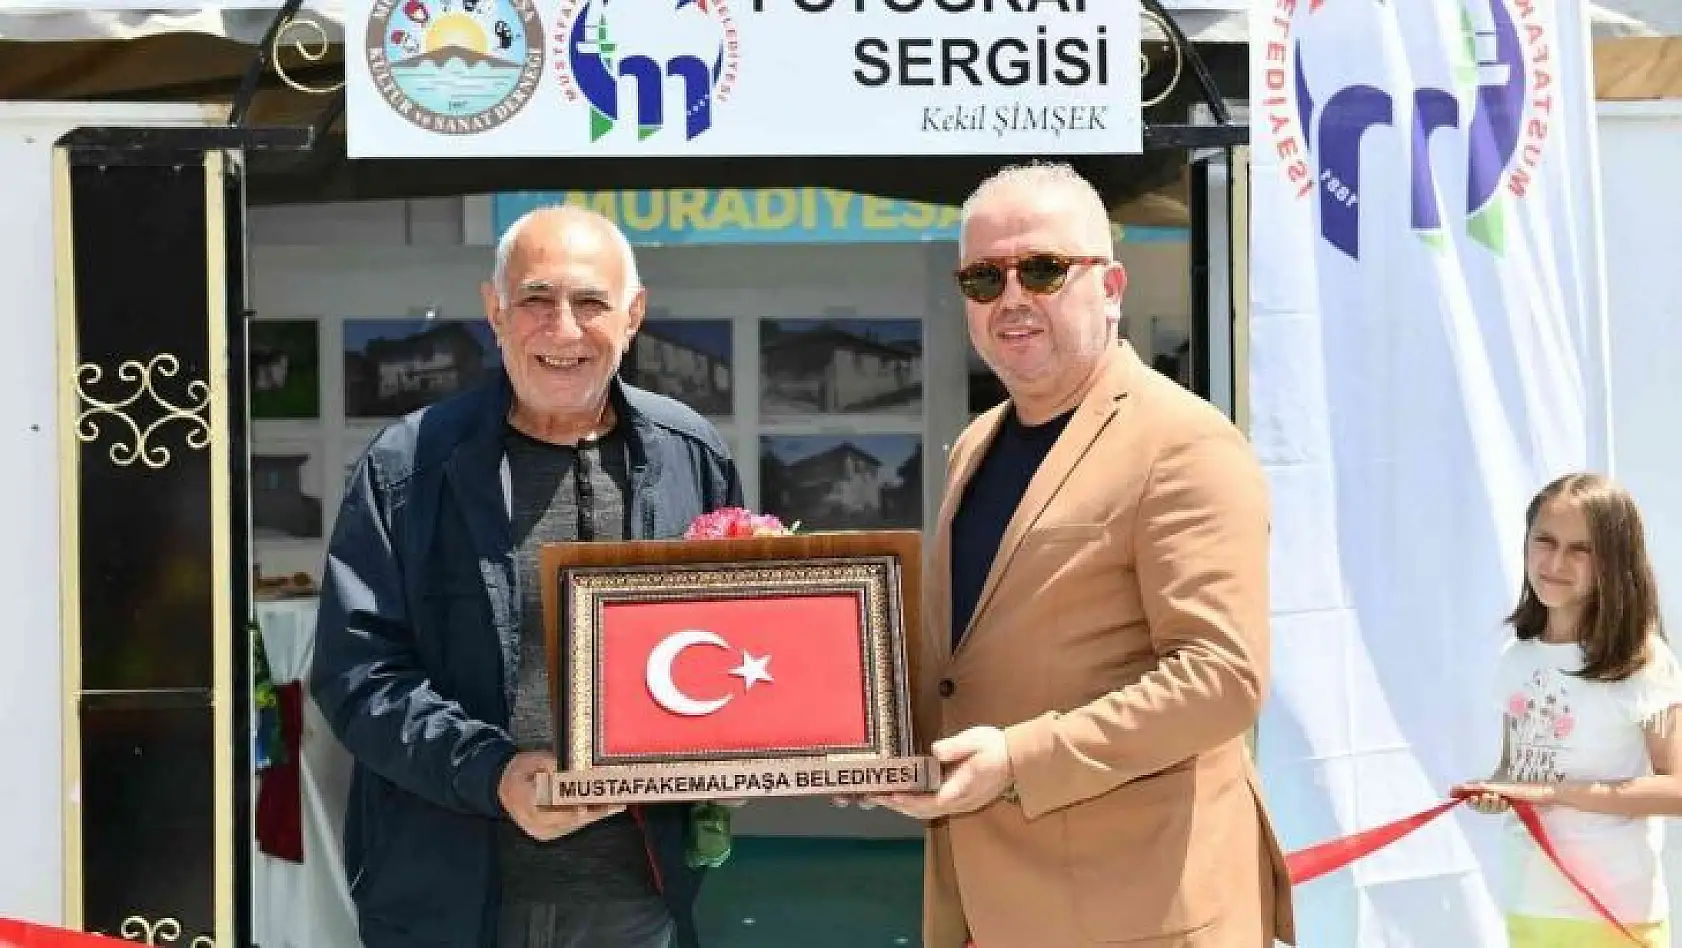 Tarihe tanıklık etmiş 100 Ev ve Konak Sergisi Mustafakemalpaşa'da açıldı